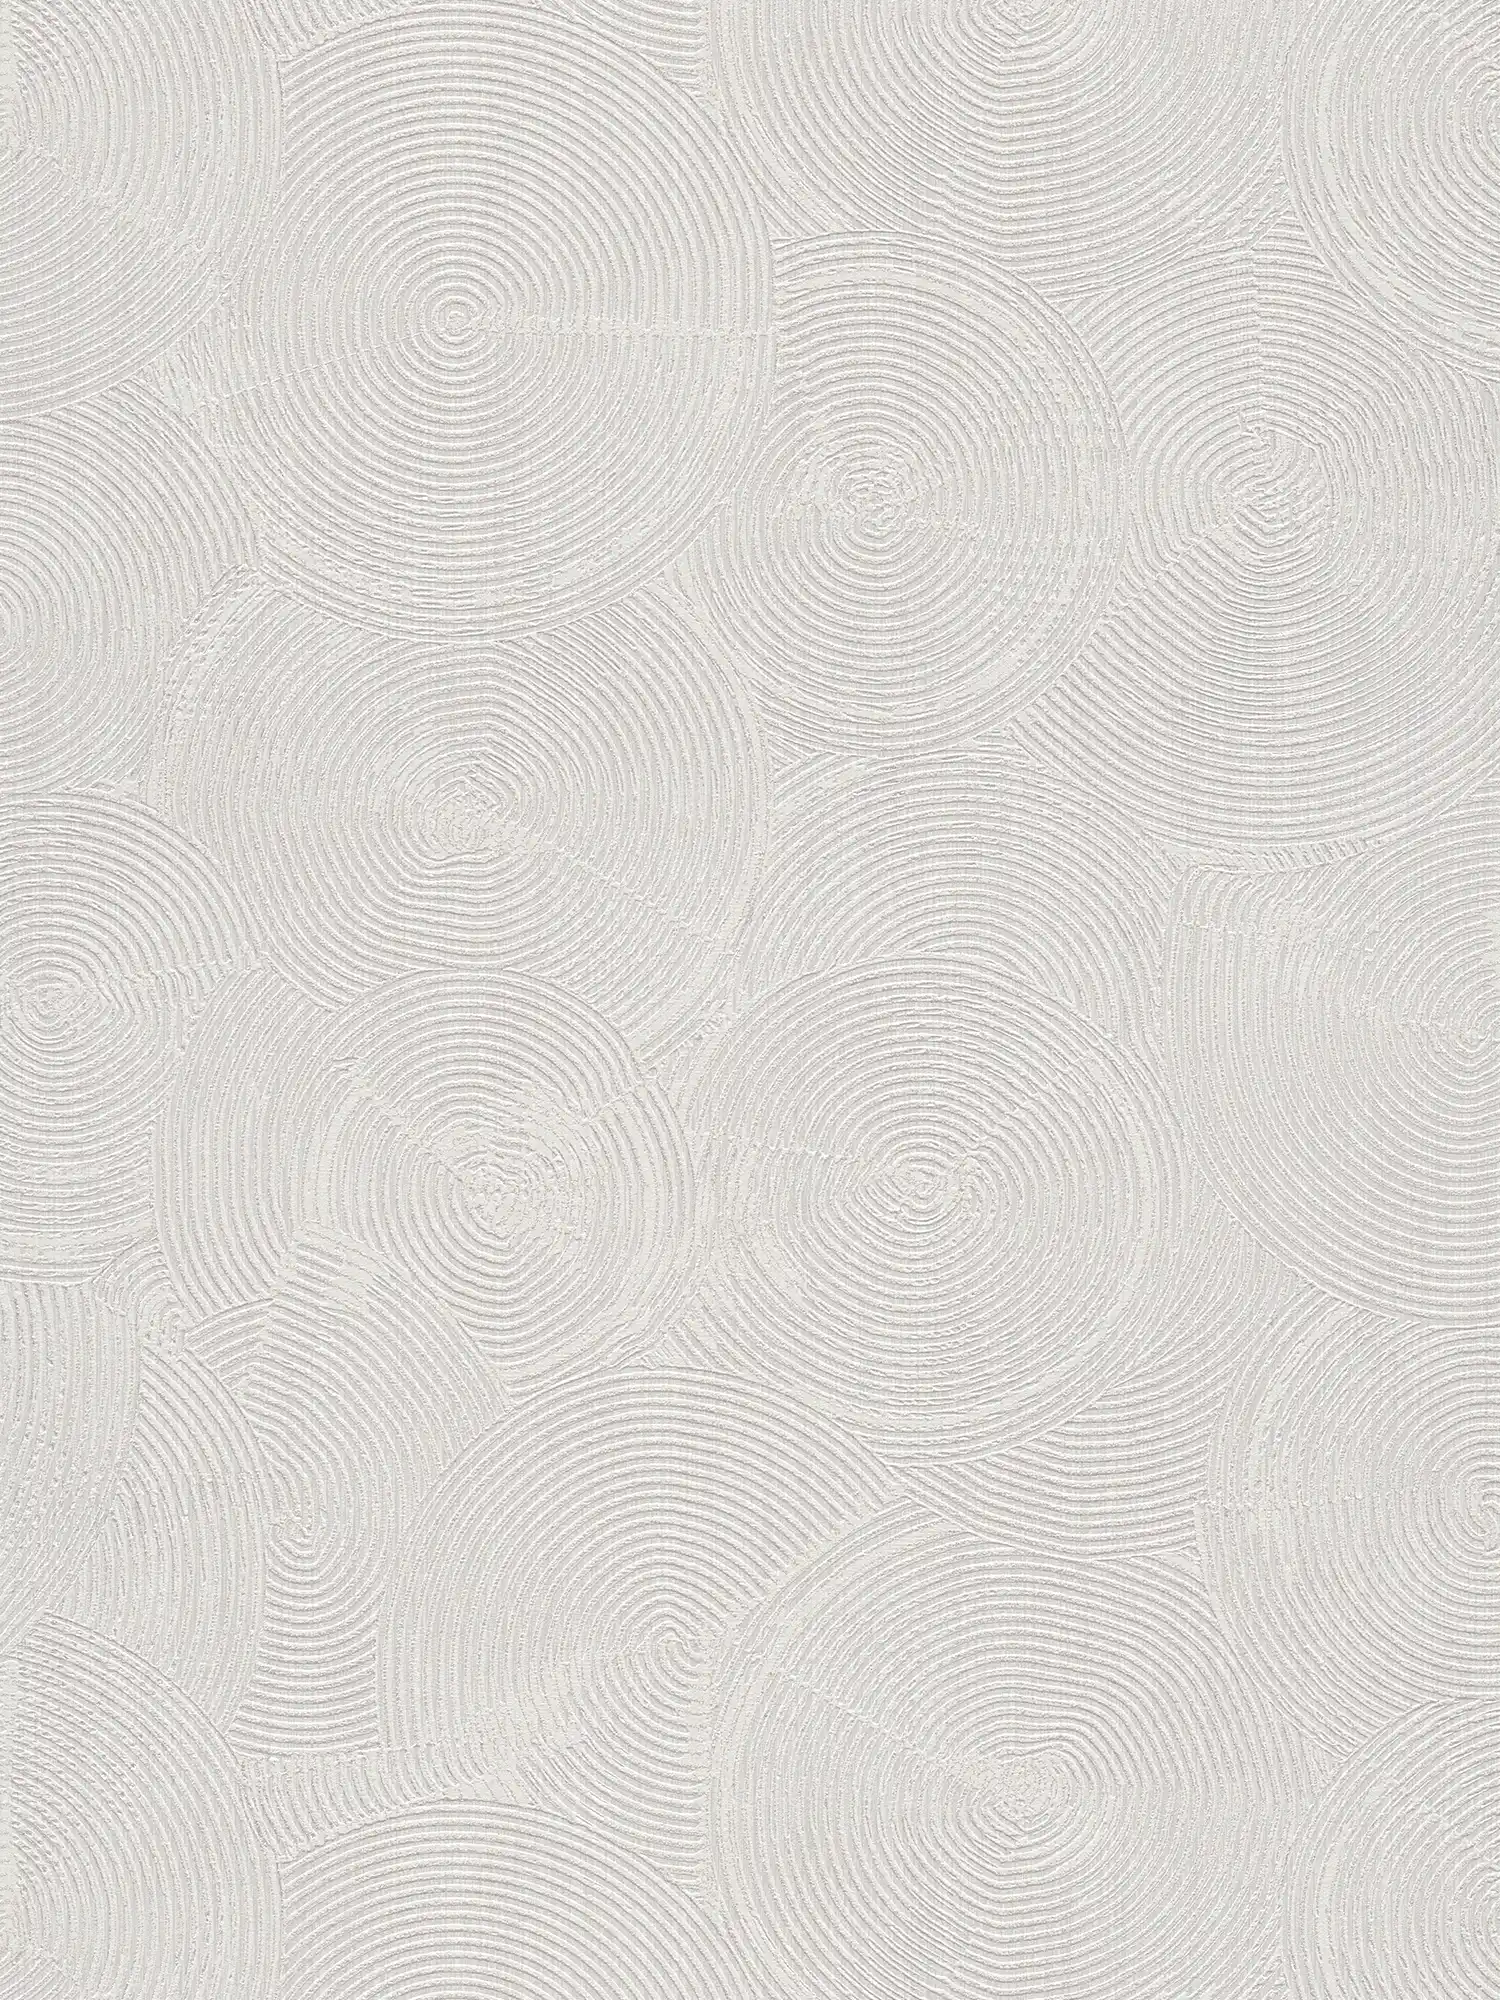 Behang met moderne gipslook & metallic accenten - grijs, metallic, wit
